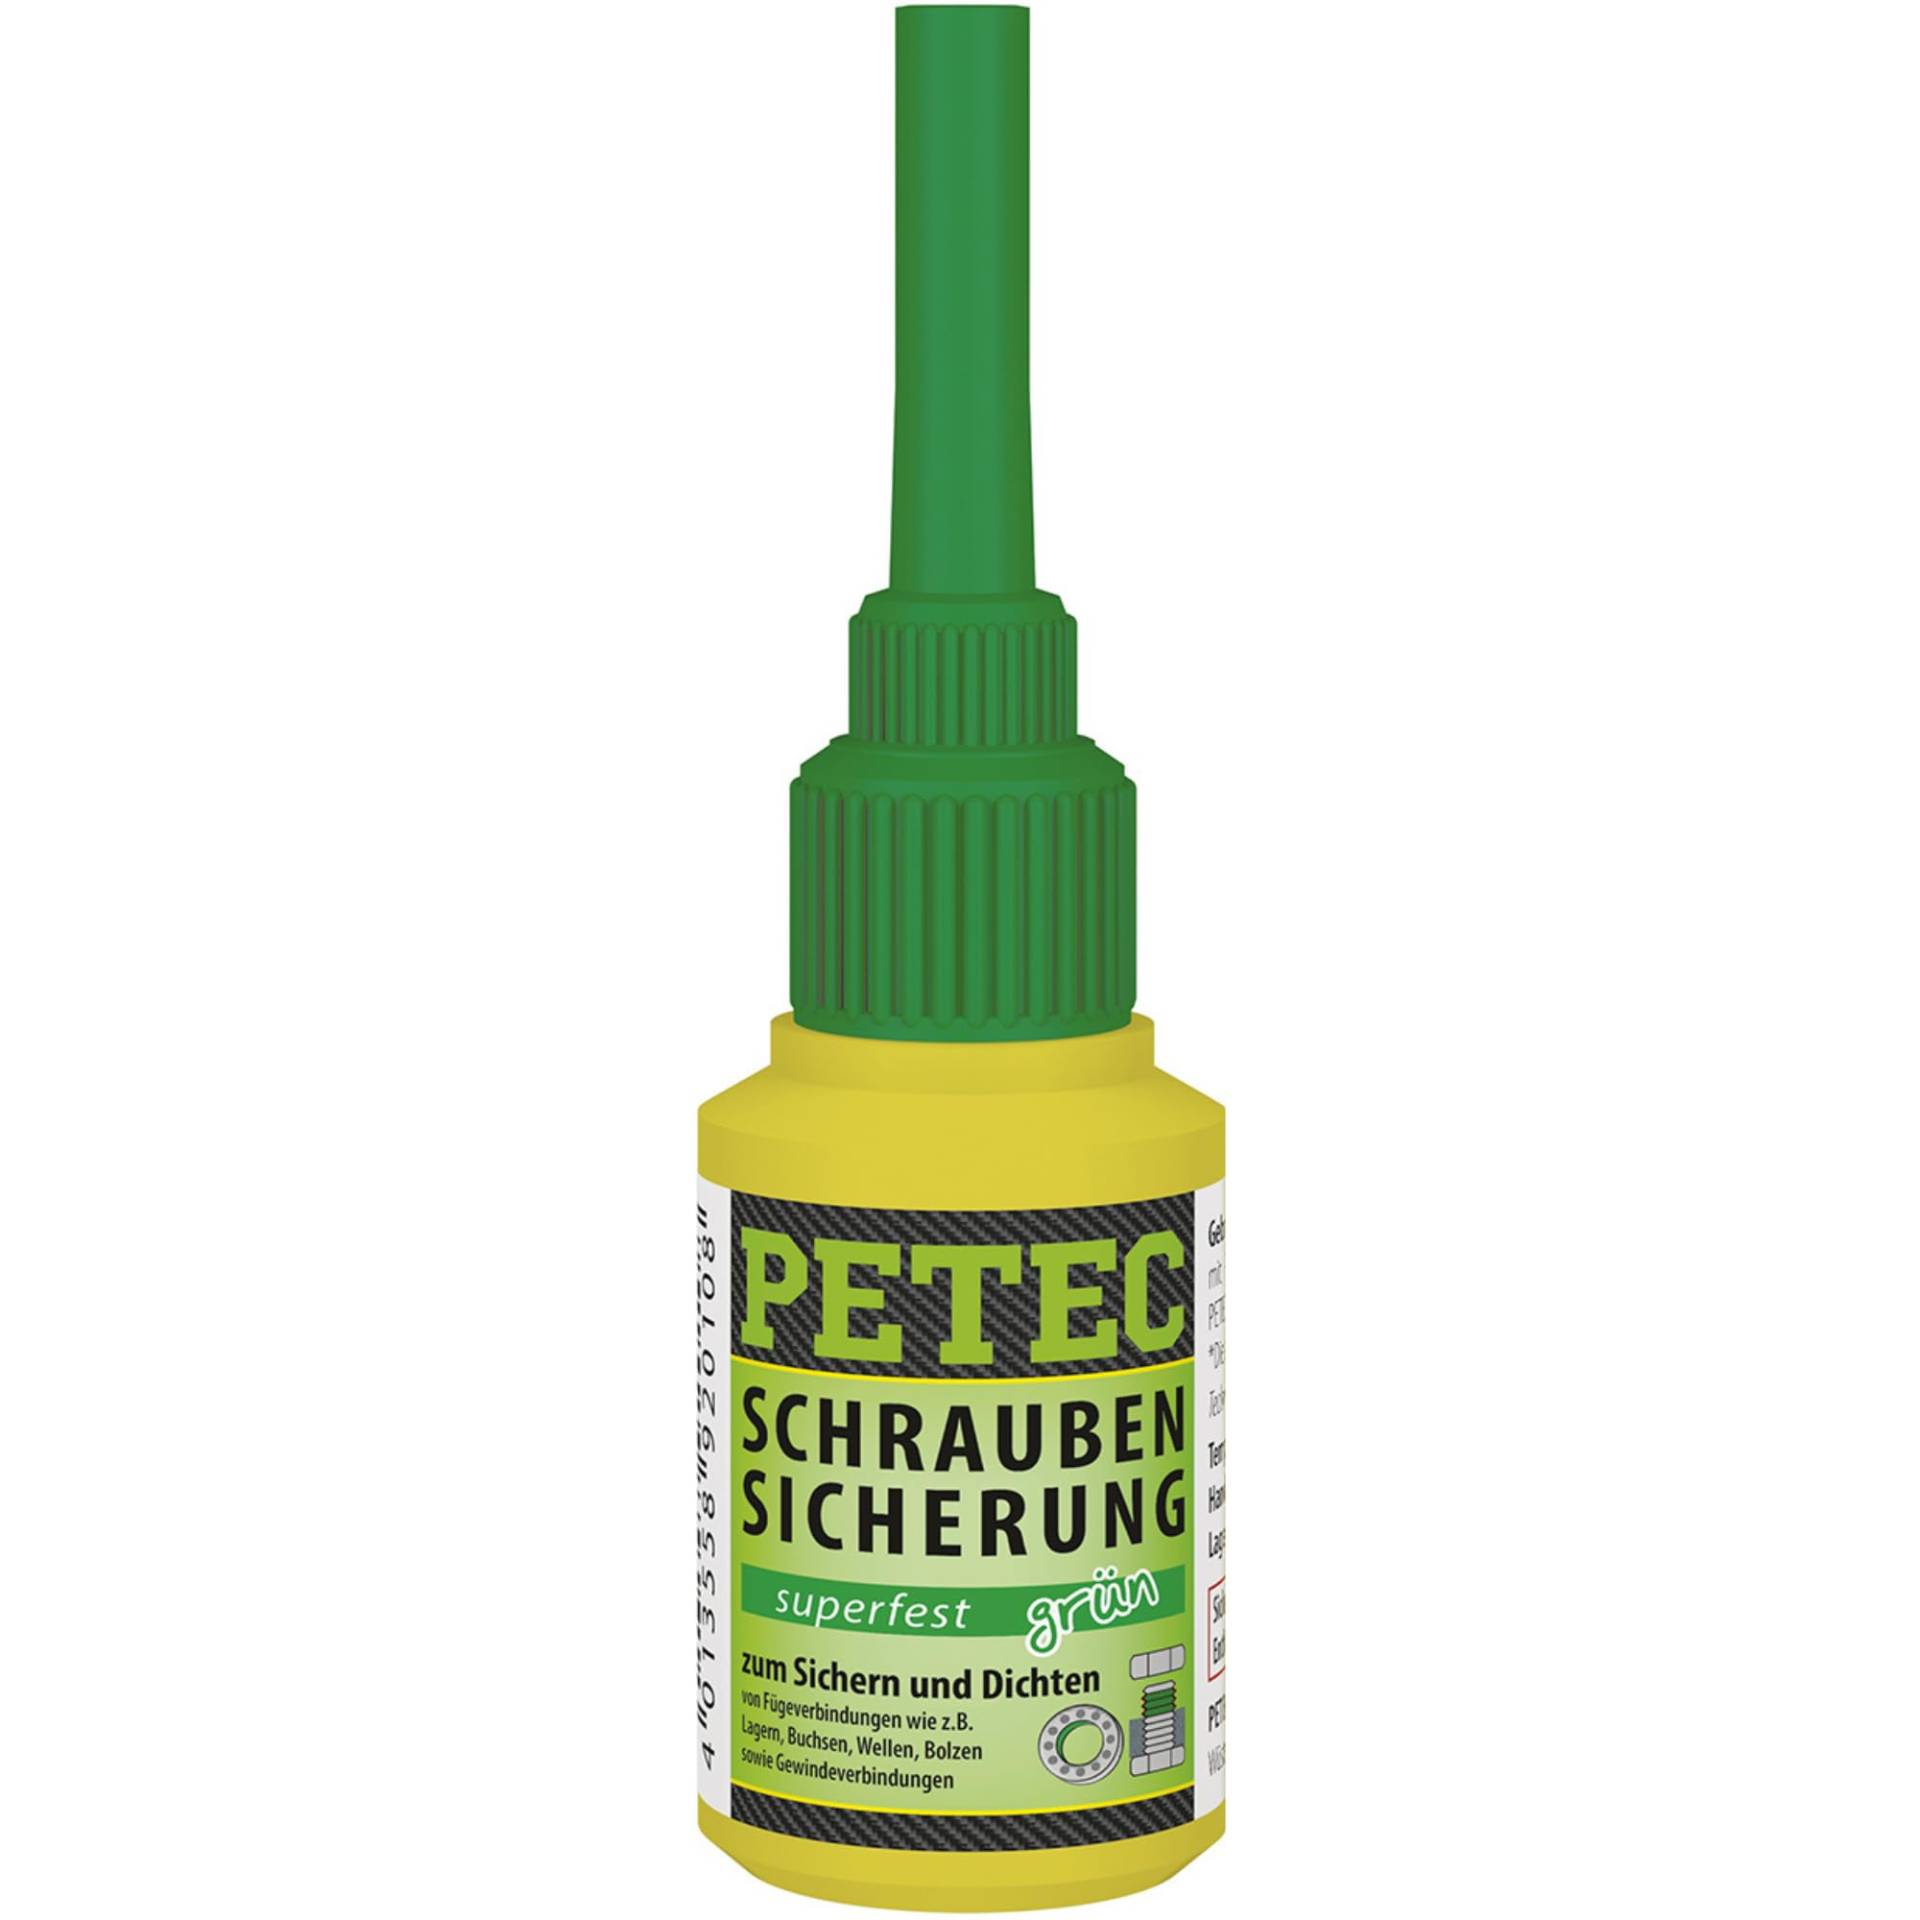 PETEC Schraubensicherung Superfest grün 10g. Schrauben Kleber zum Sichern und Dichten. Starker Klebstoff Schraubenkleber für Muttern, Bolzen und Gewindegrößen bis M20. 93010 von PETEC